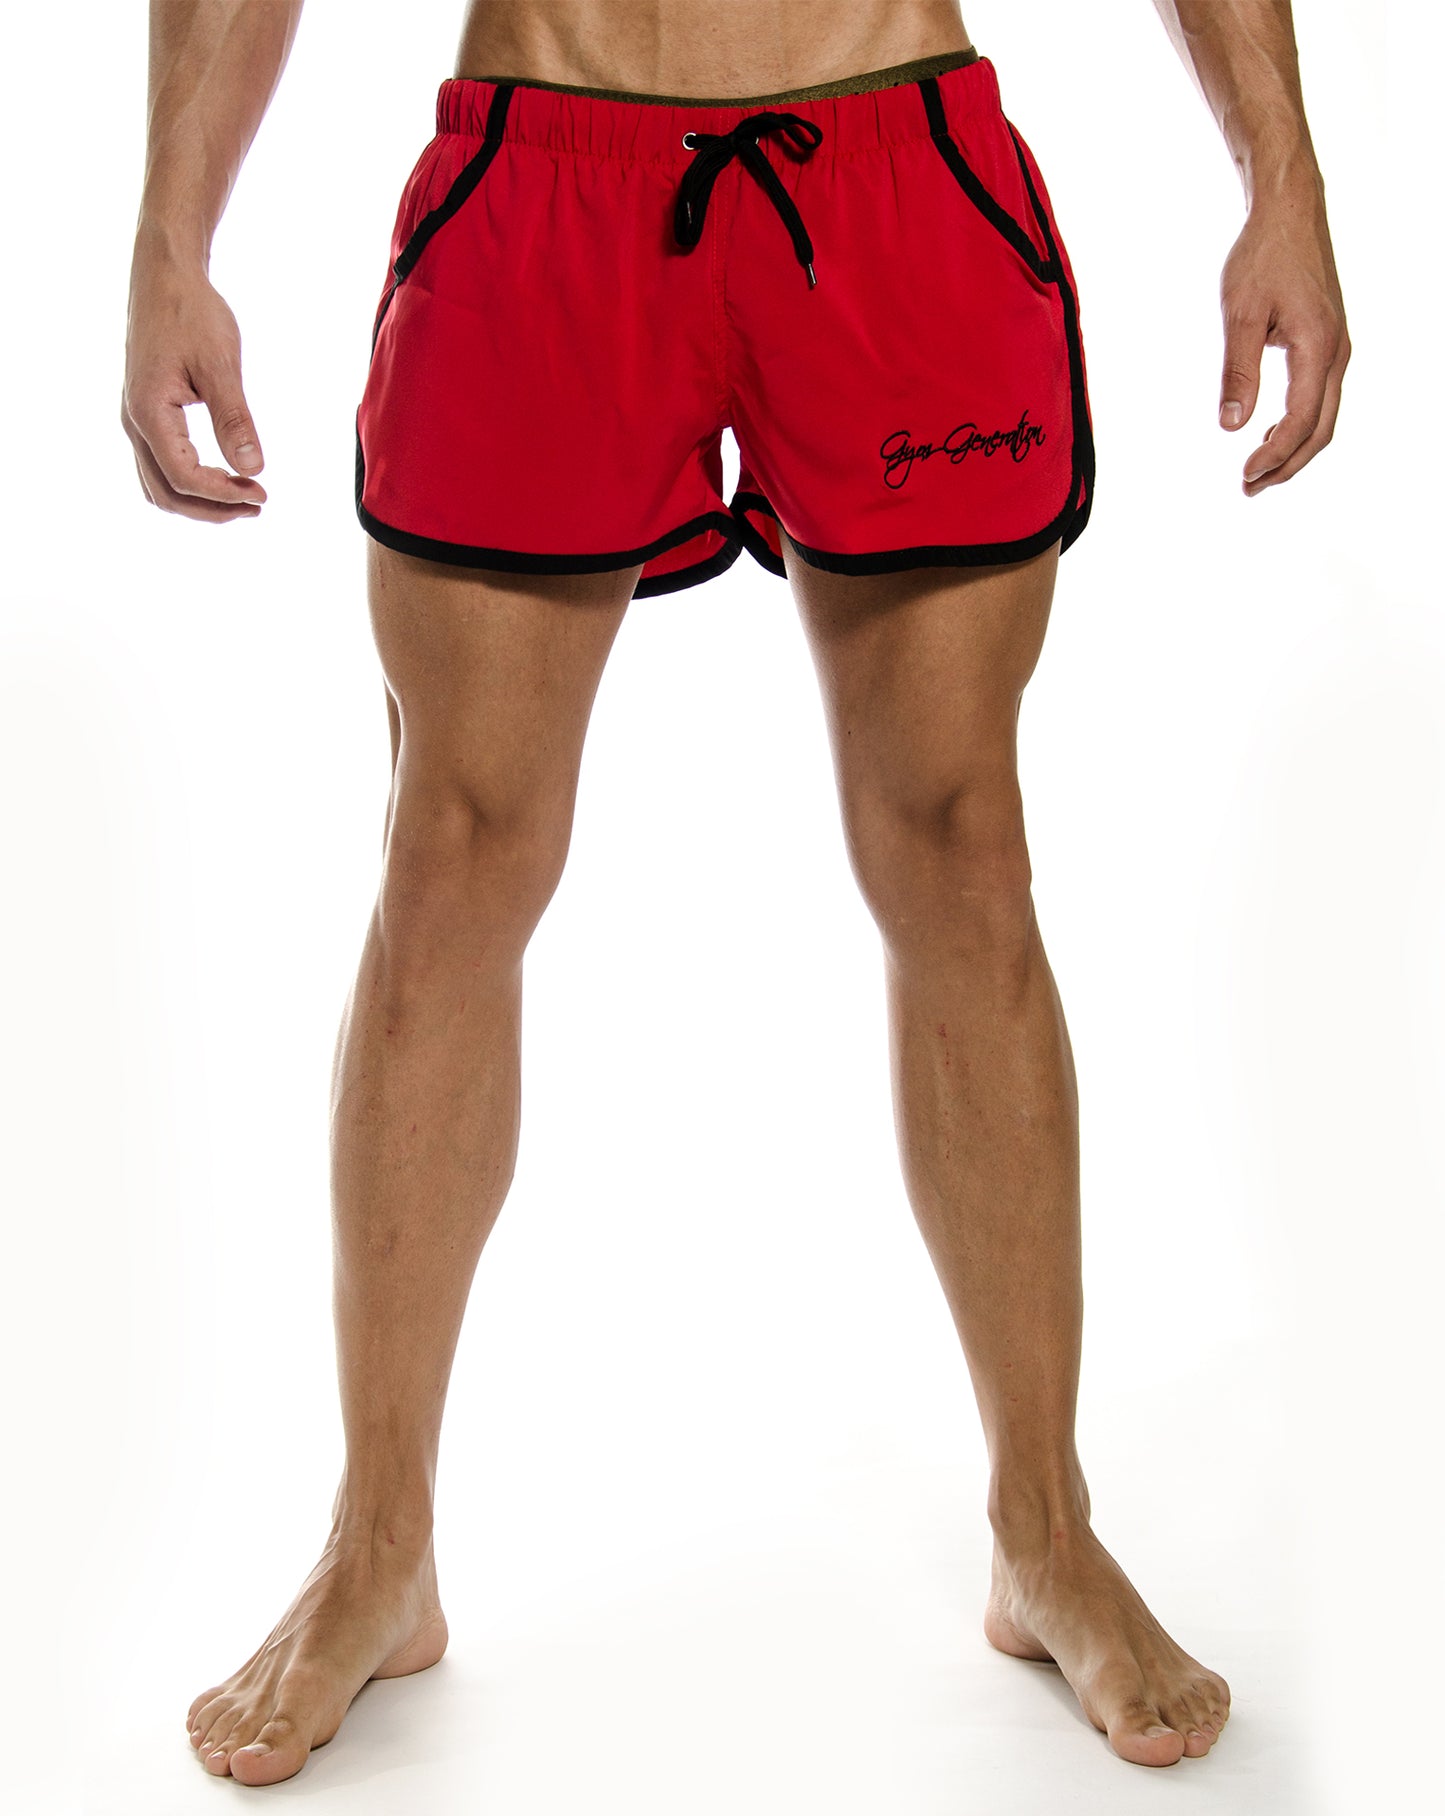 Komfortable und modische Aesthetic Gym Shorts in Rot, ideal für Sportbegeisterte und Modebewusste, von Gym Generation.